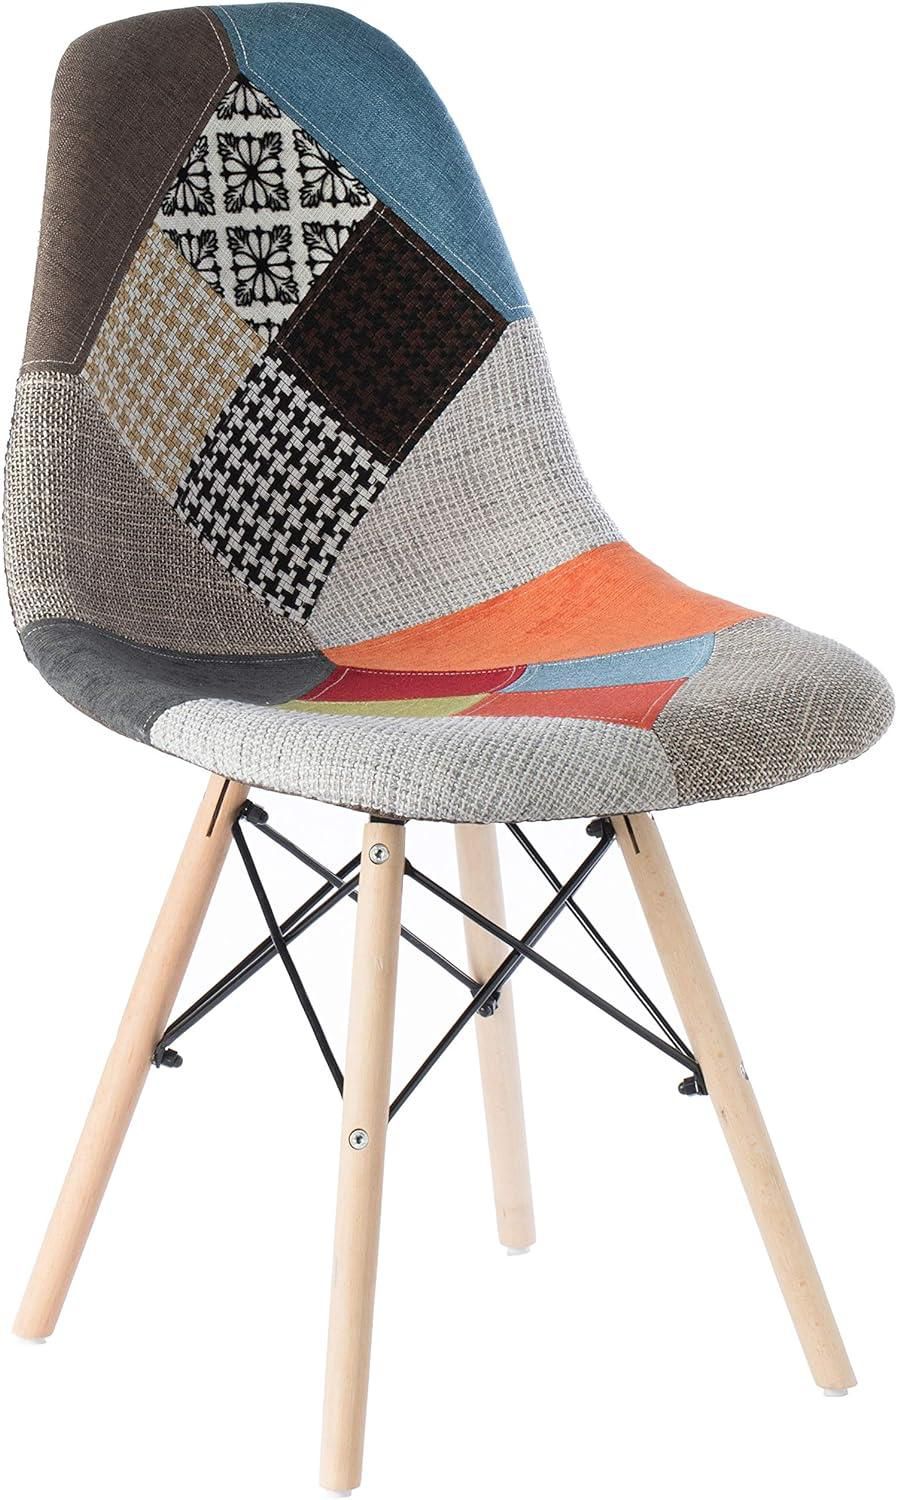 كرسي سهل التجميع مبطن مع ارجل خشبيه  وقماش متعدد الألوان 